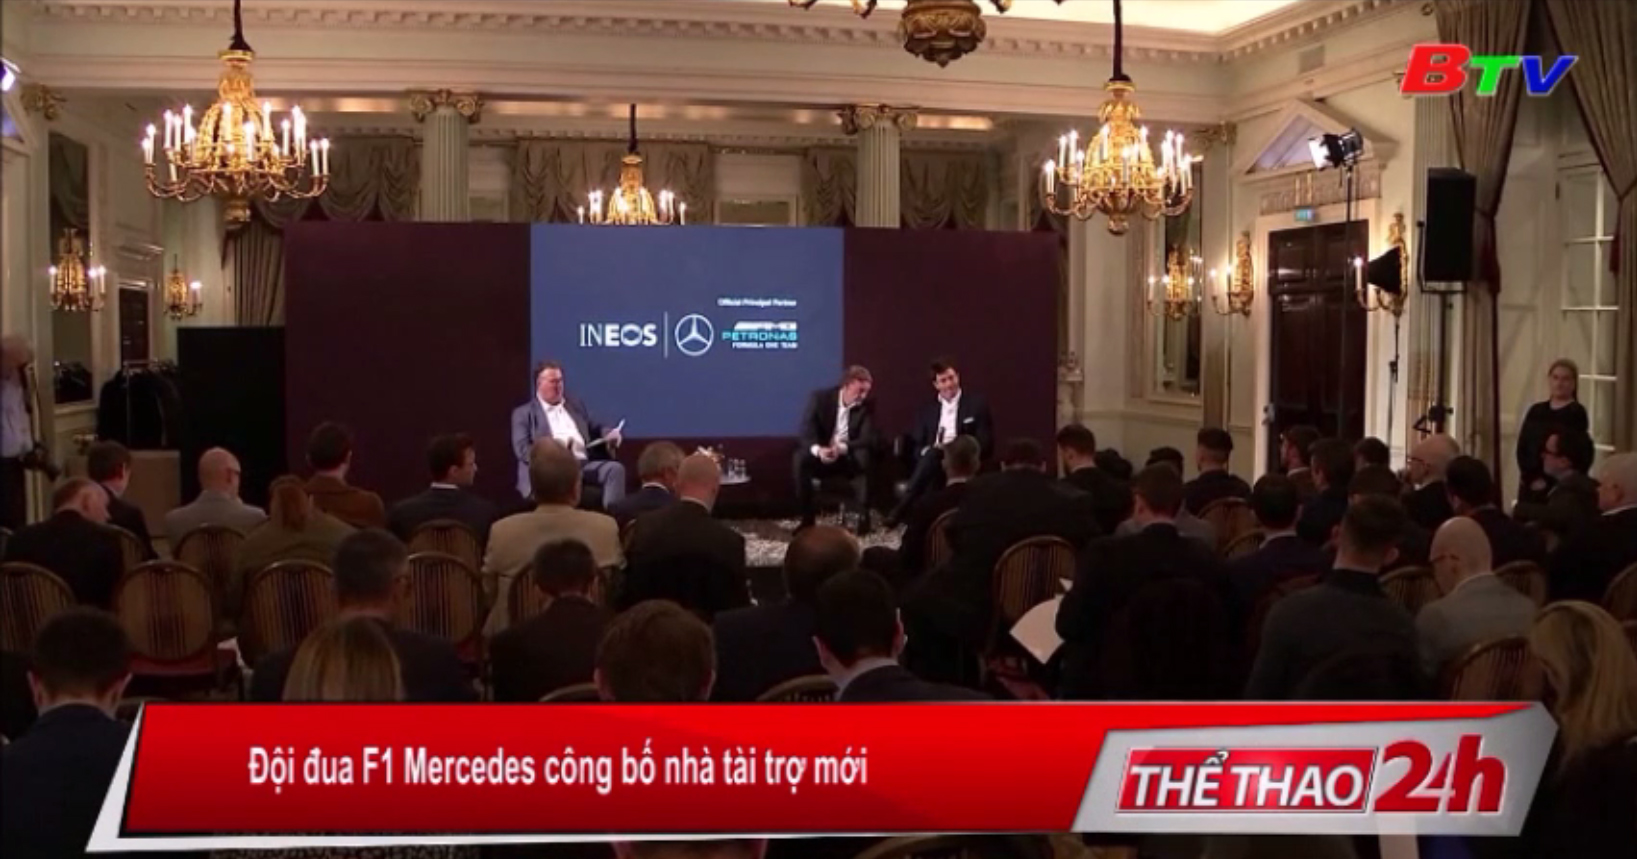 Đội đua F1 Mercedes công bố nhà tài trợ mới